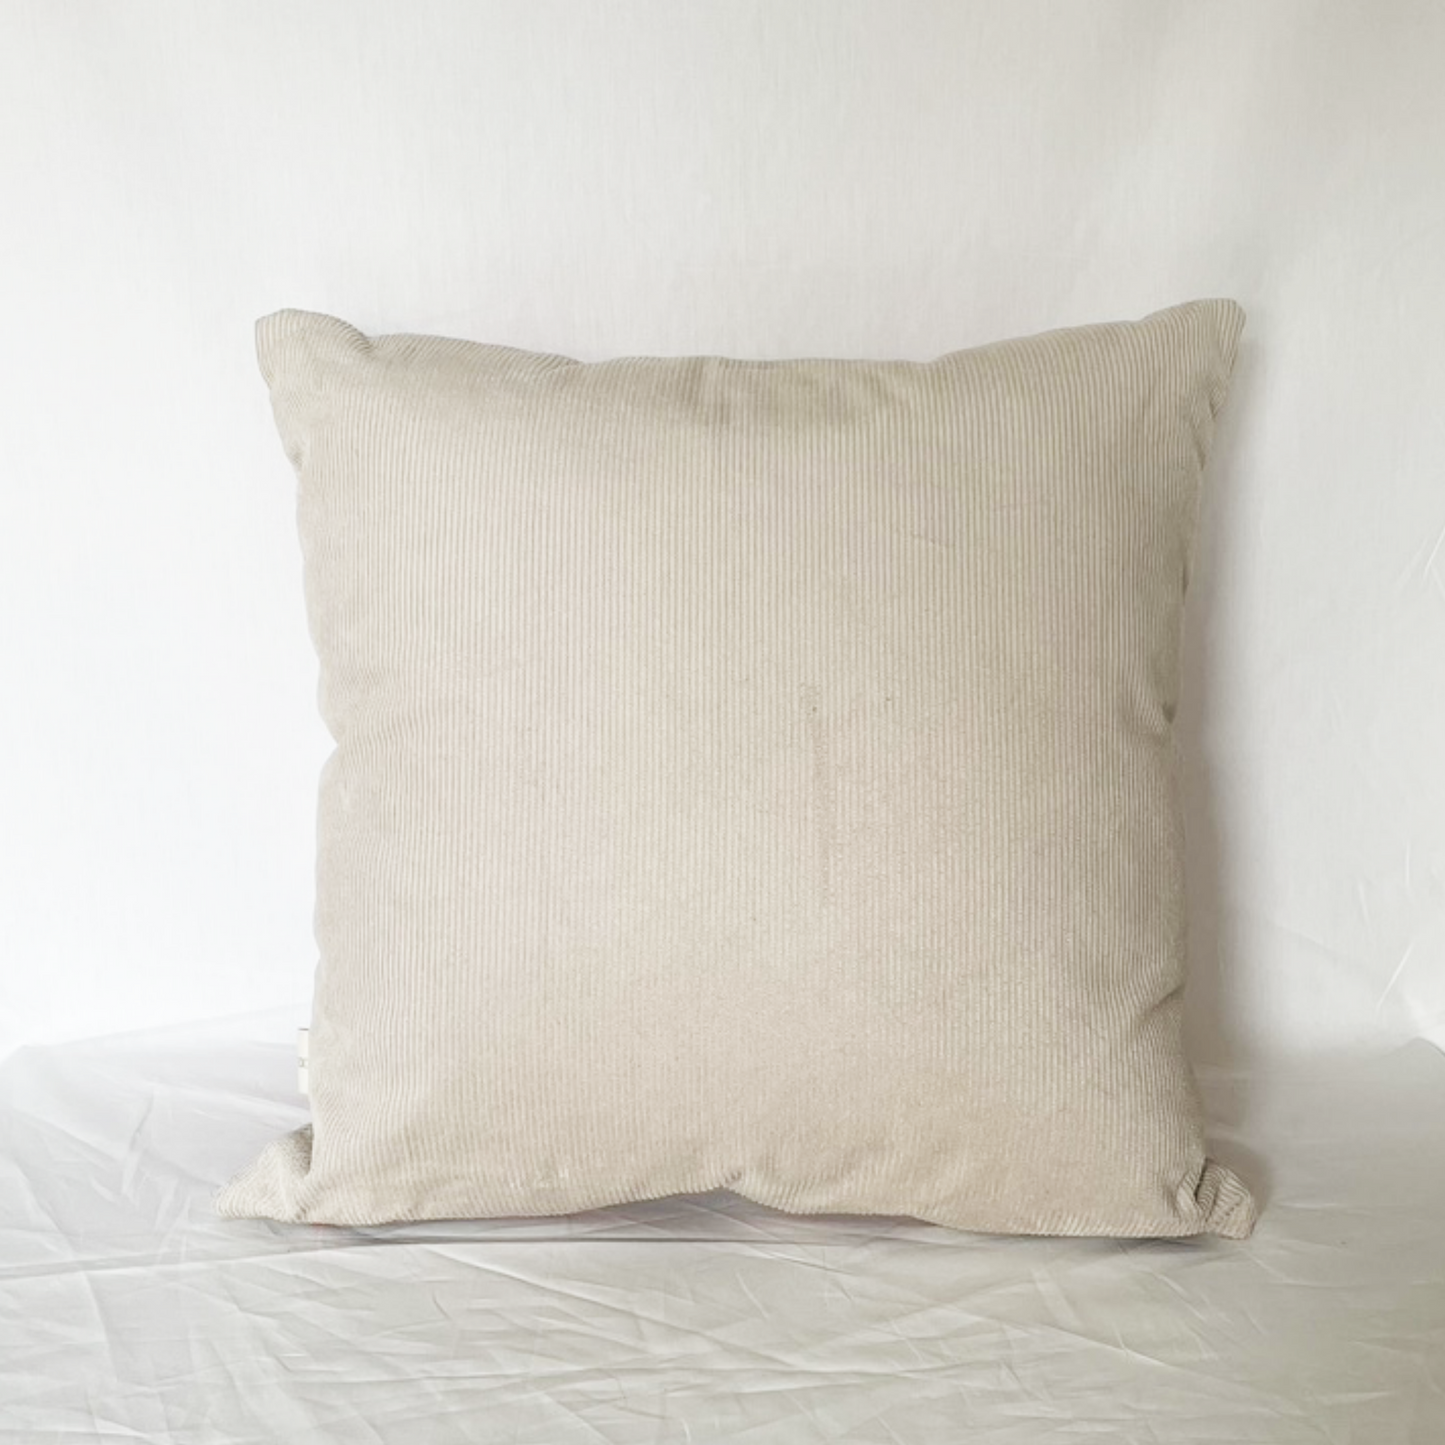 Large Scale Argyle Patterned Cushion- Ready Made